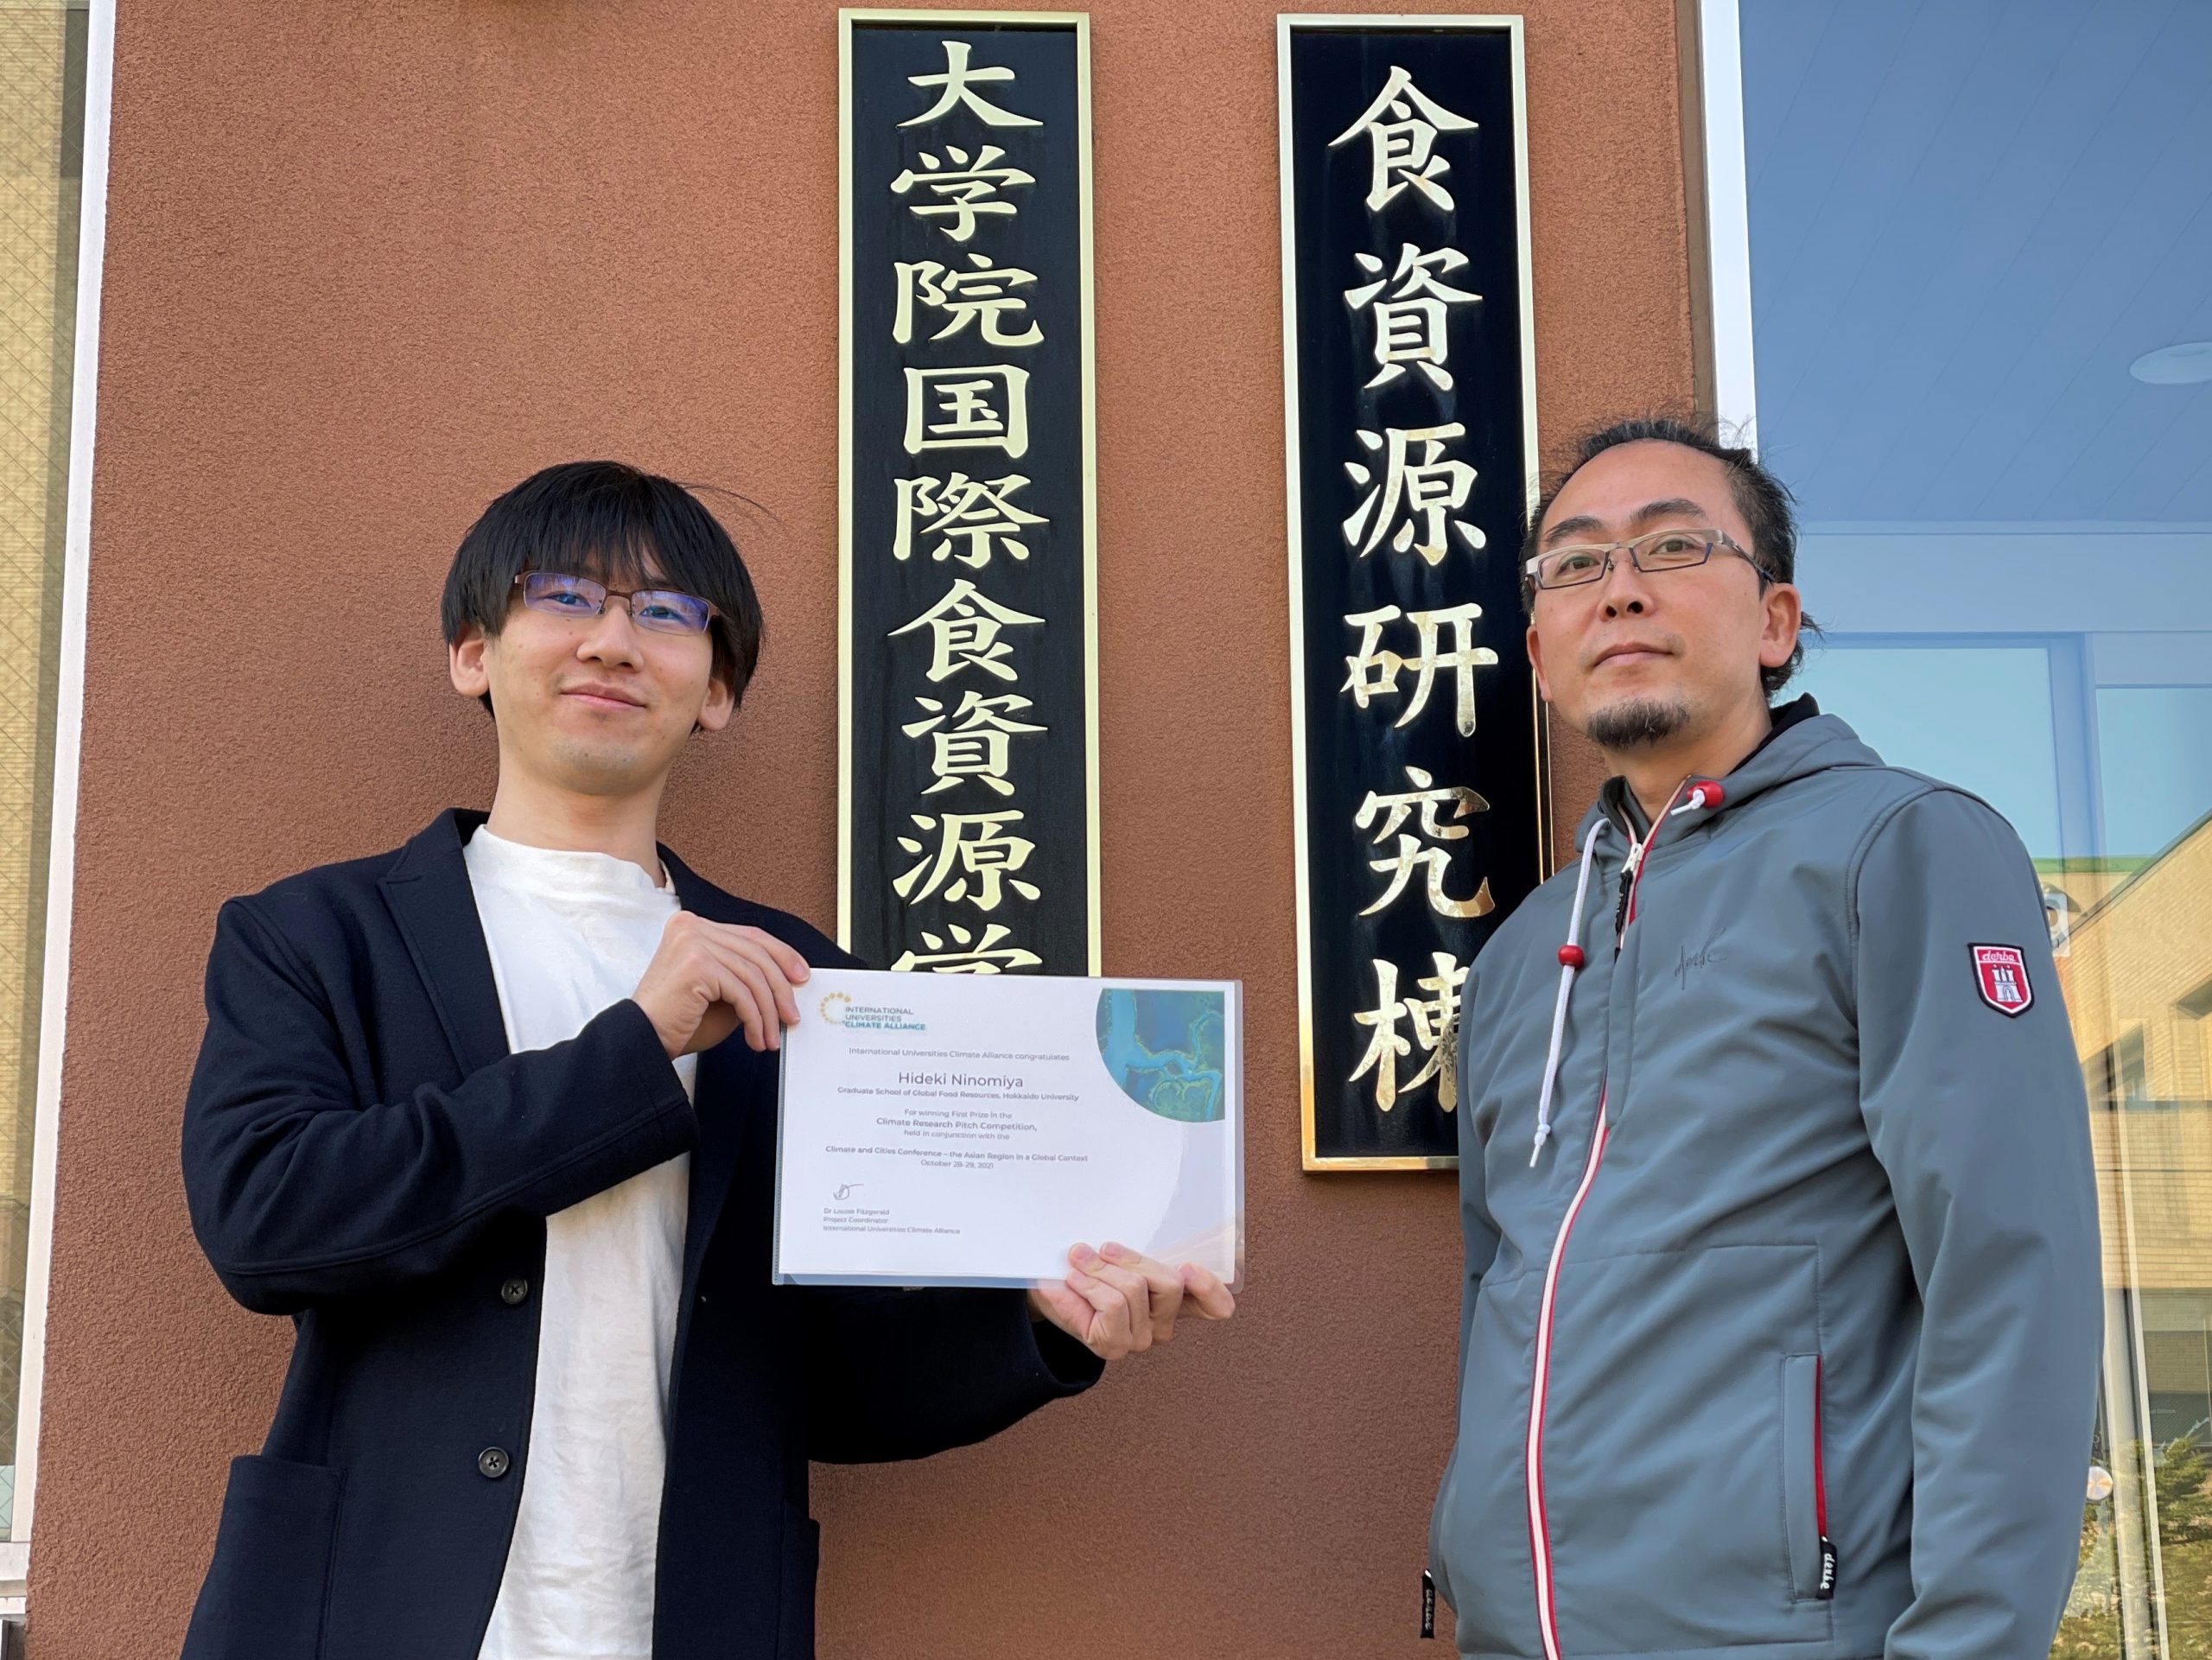 二宮秀輝さんが、International Universities Climate AllianceにおけるClimate Research Pitch Competitionで1位に輝きました。